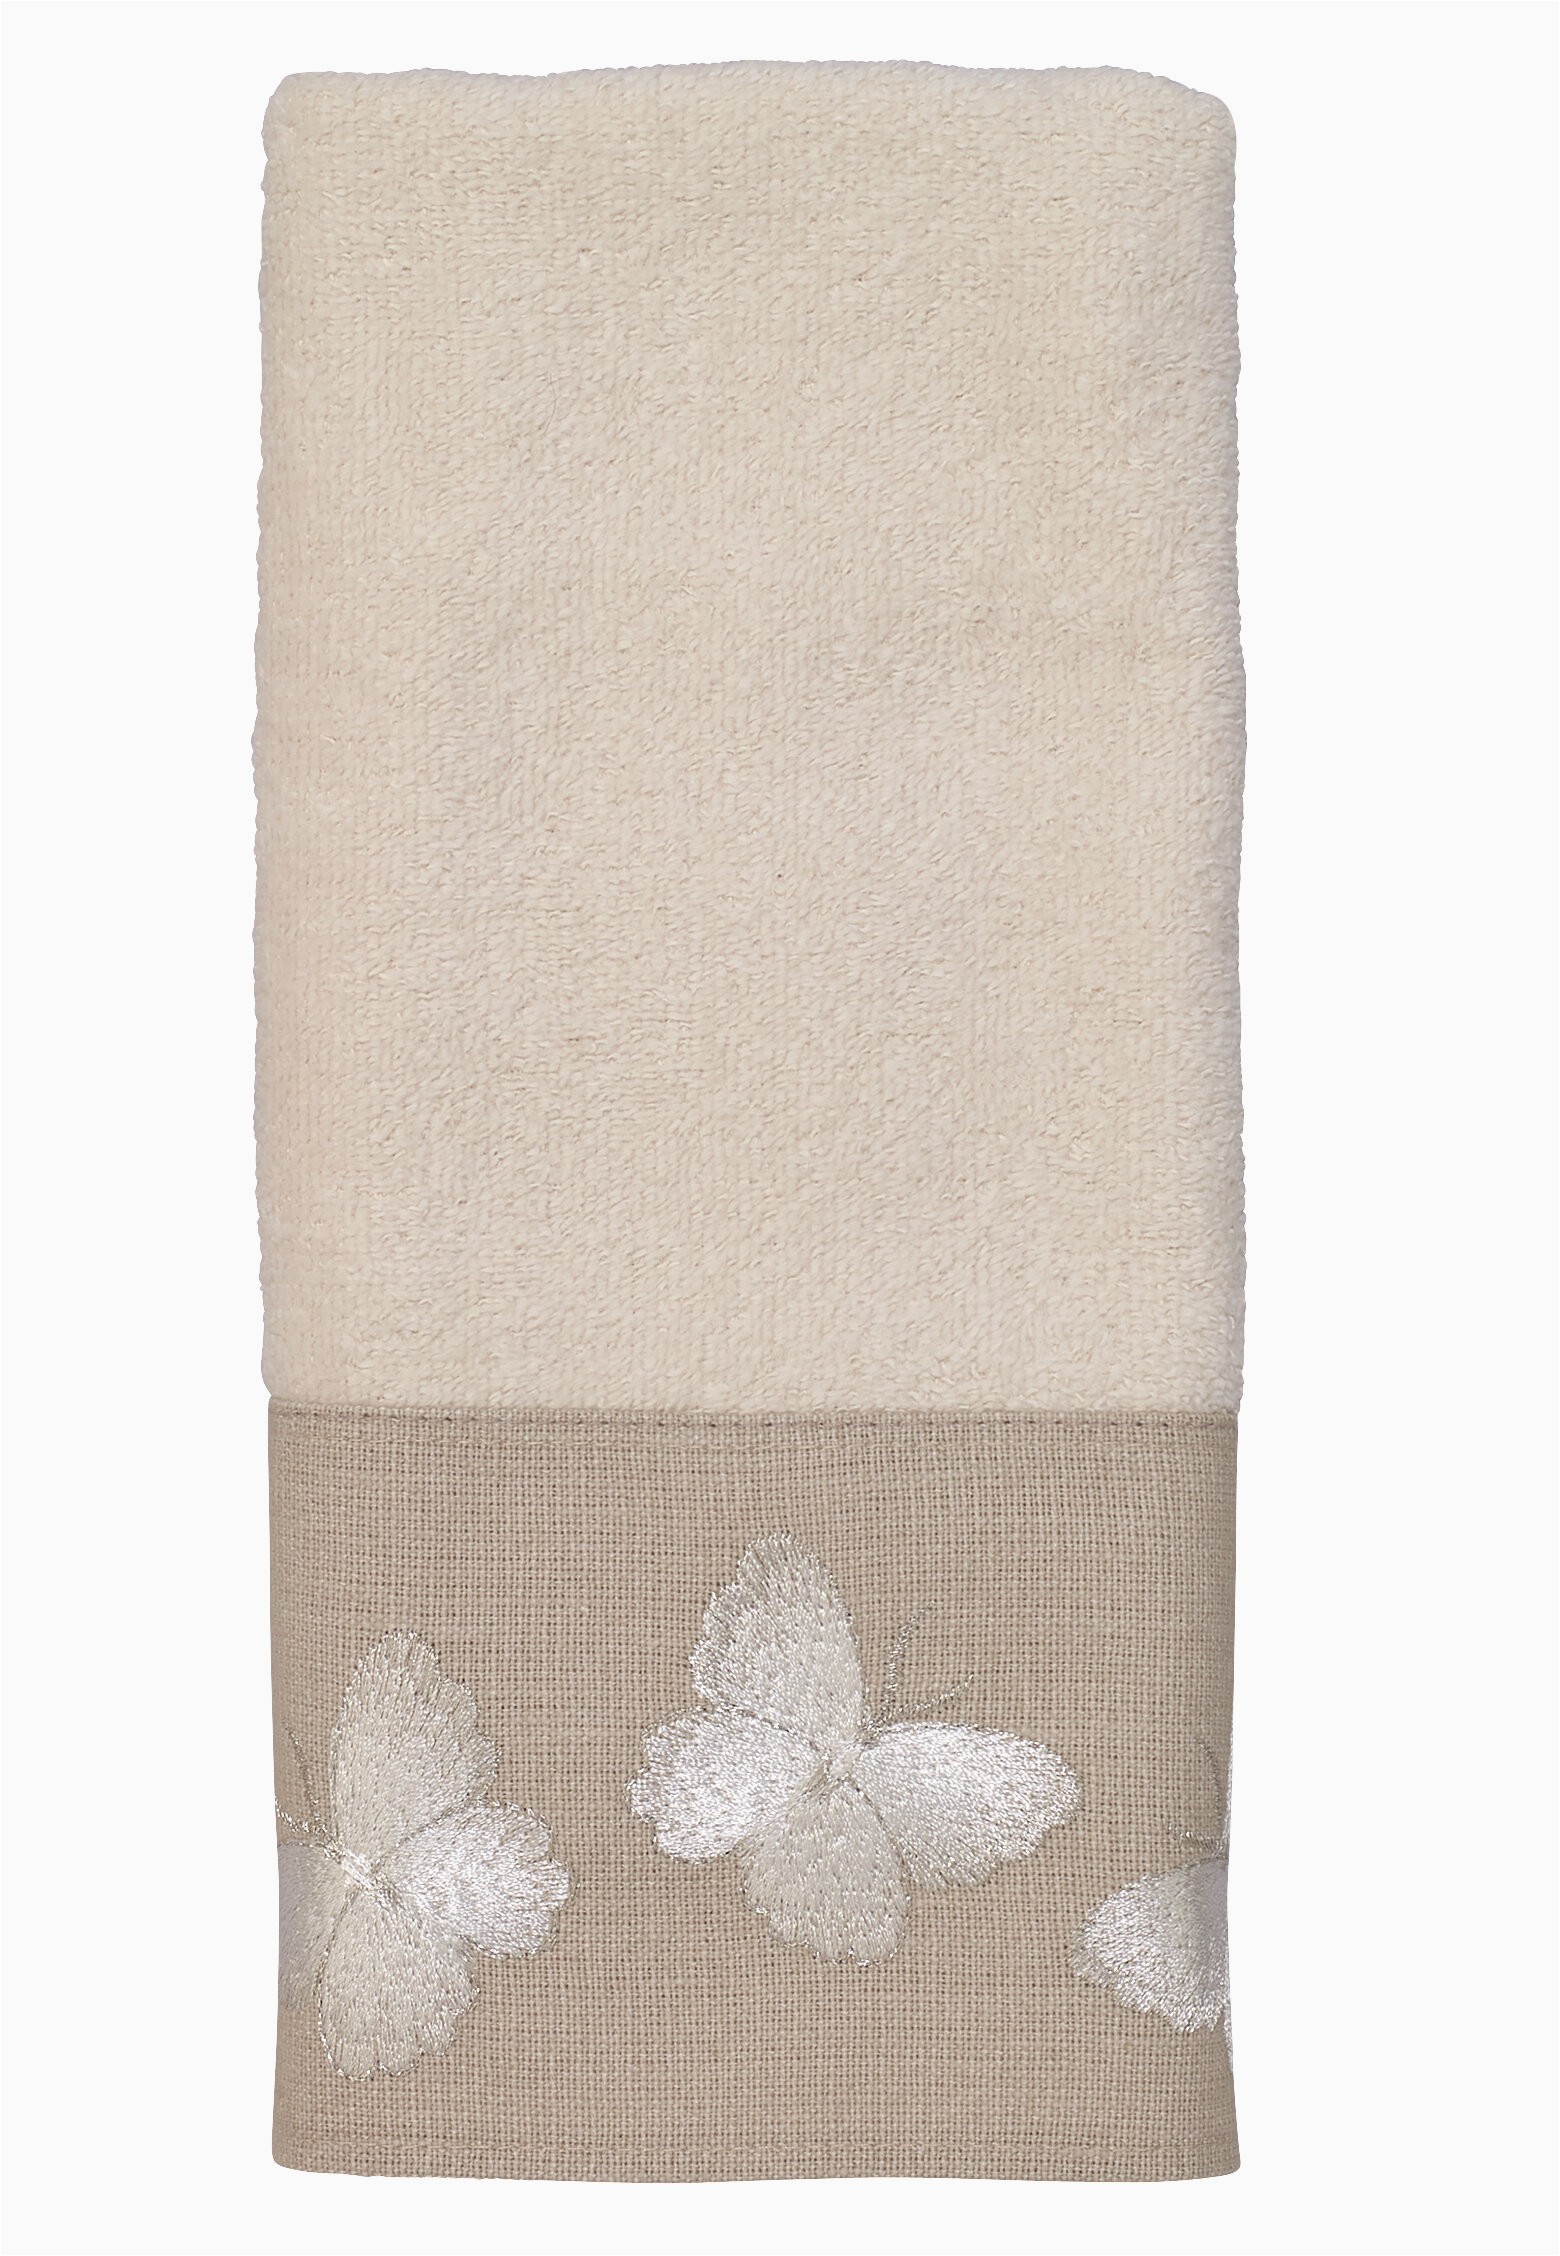 Wayfair Bathroom Rugs and towels Heathfield Cotton Fingertip towel